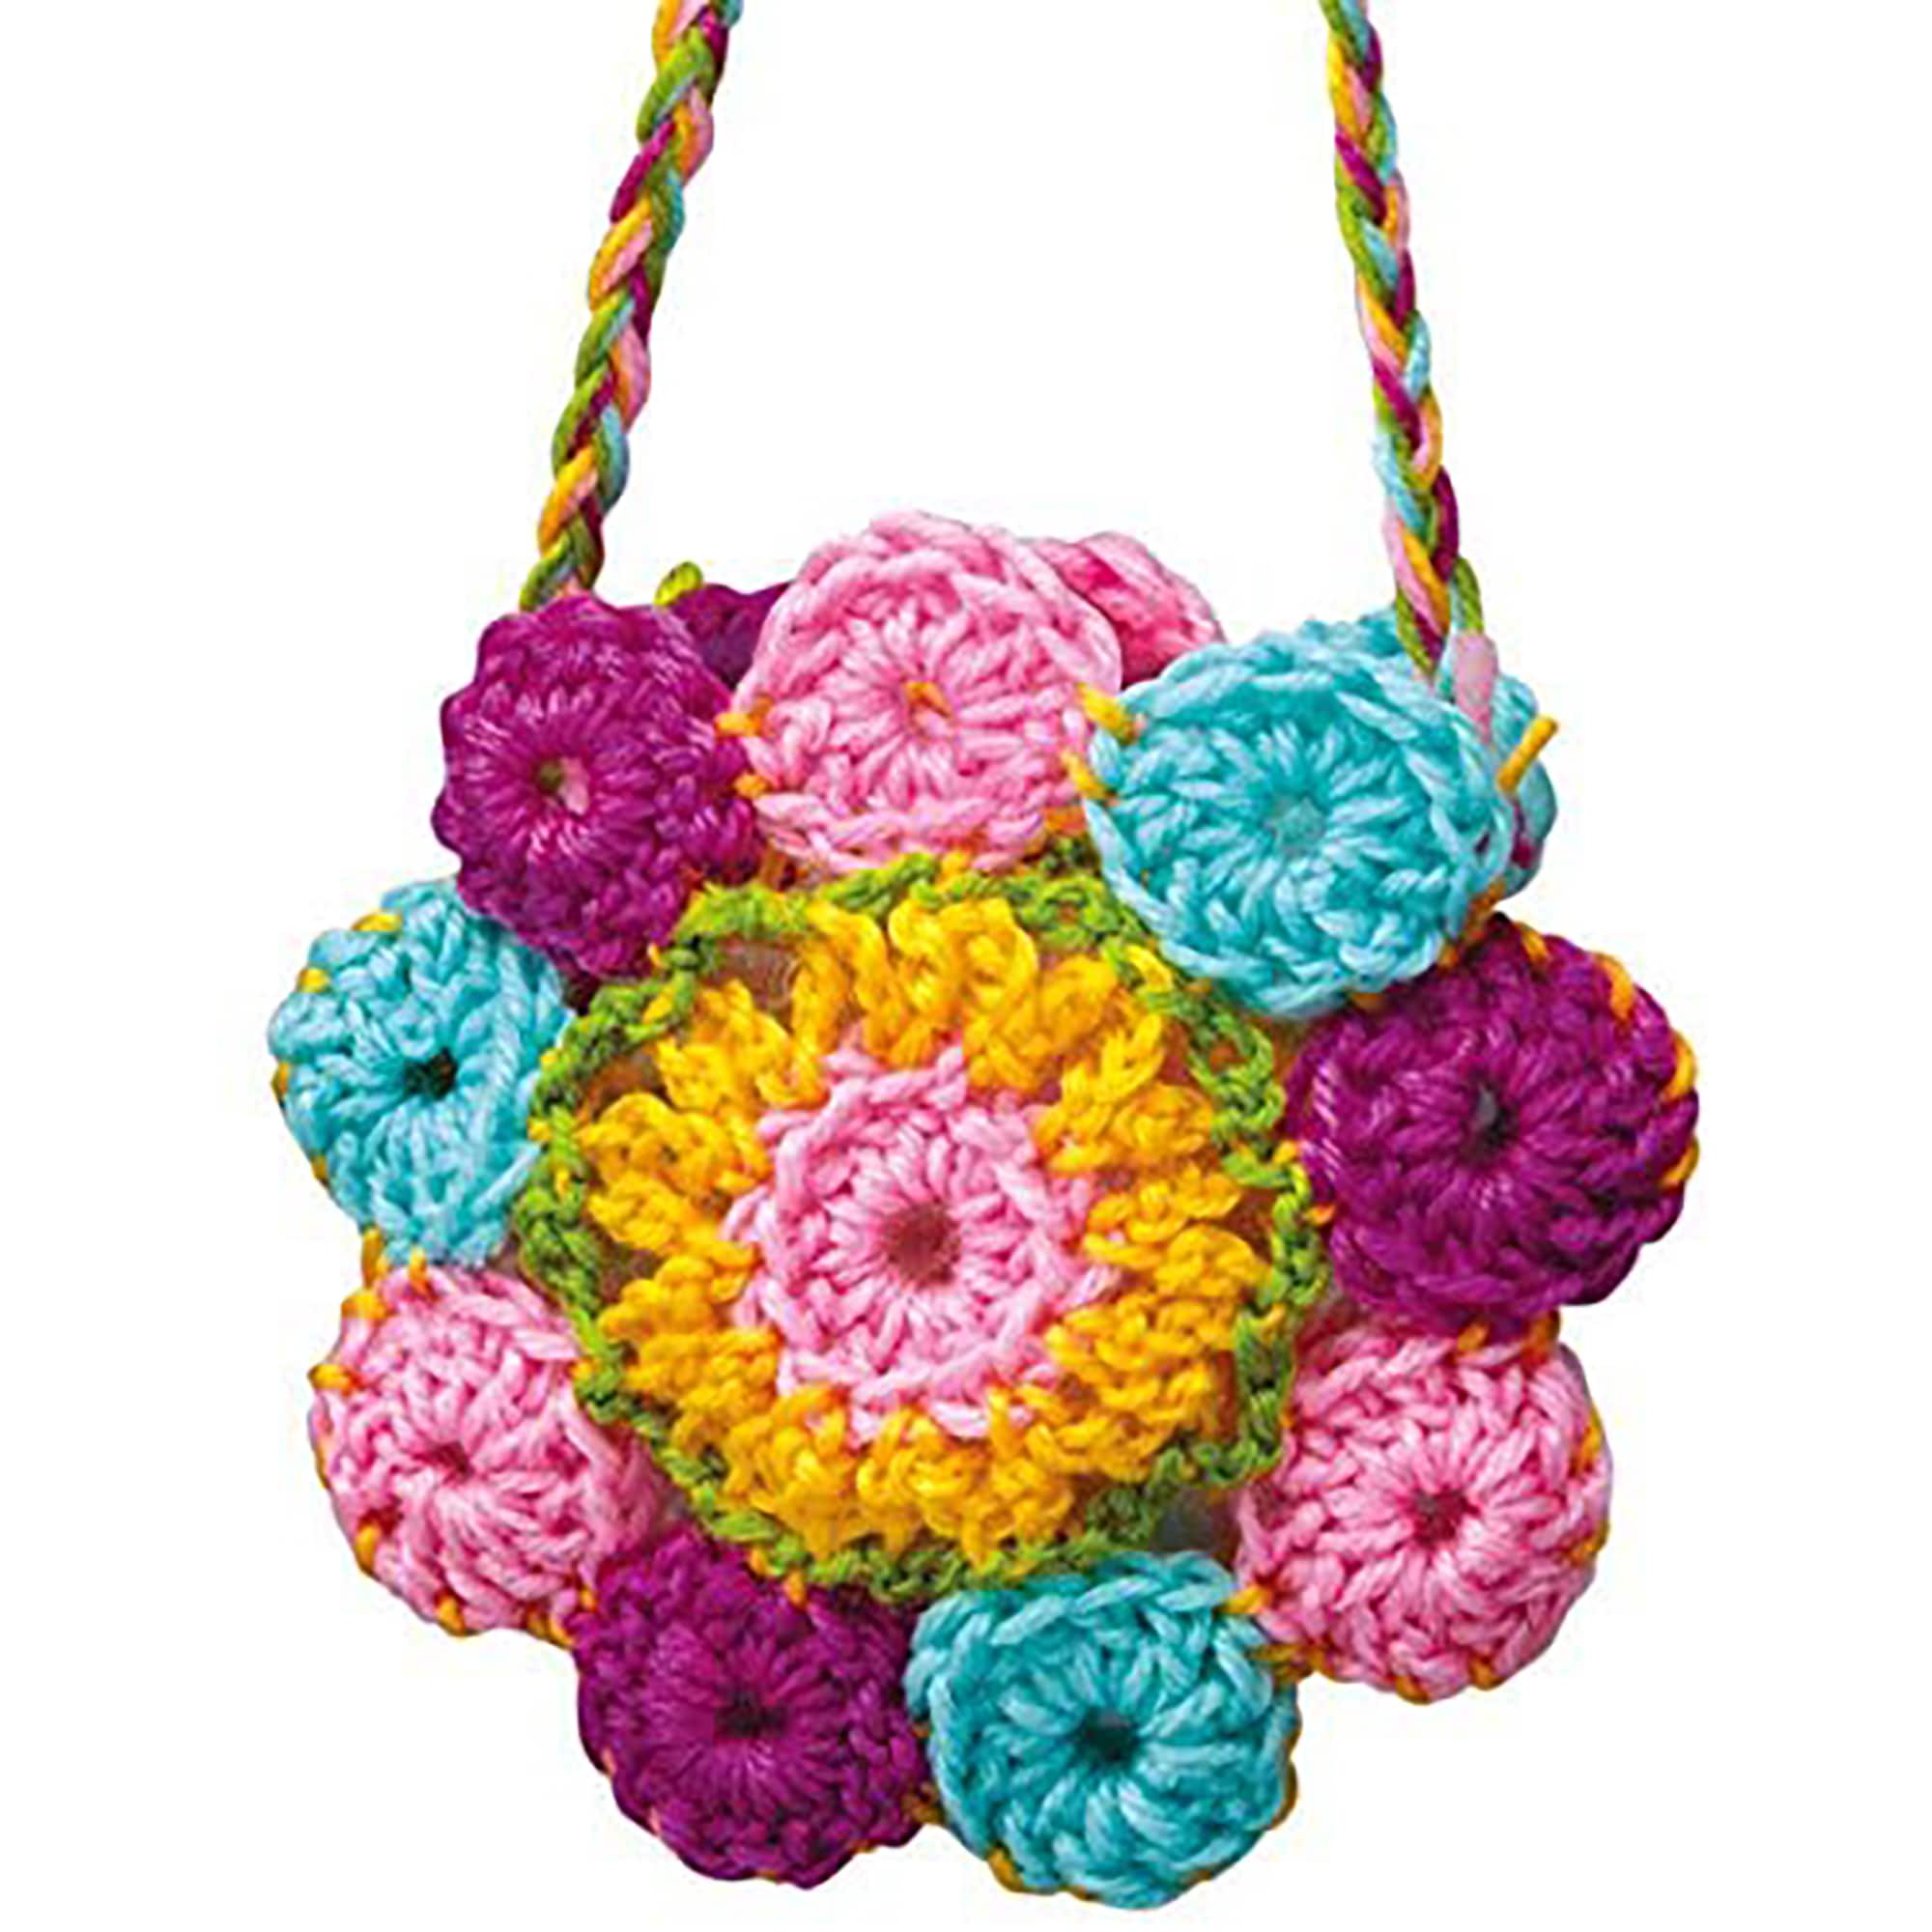 4M Children's Learn to Crochet Art Kit for Kids